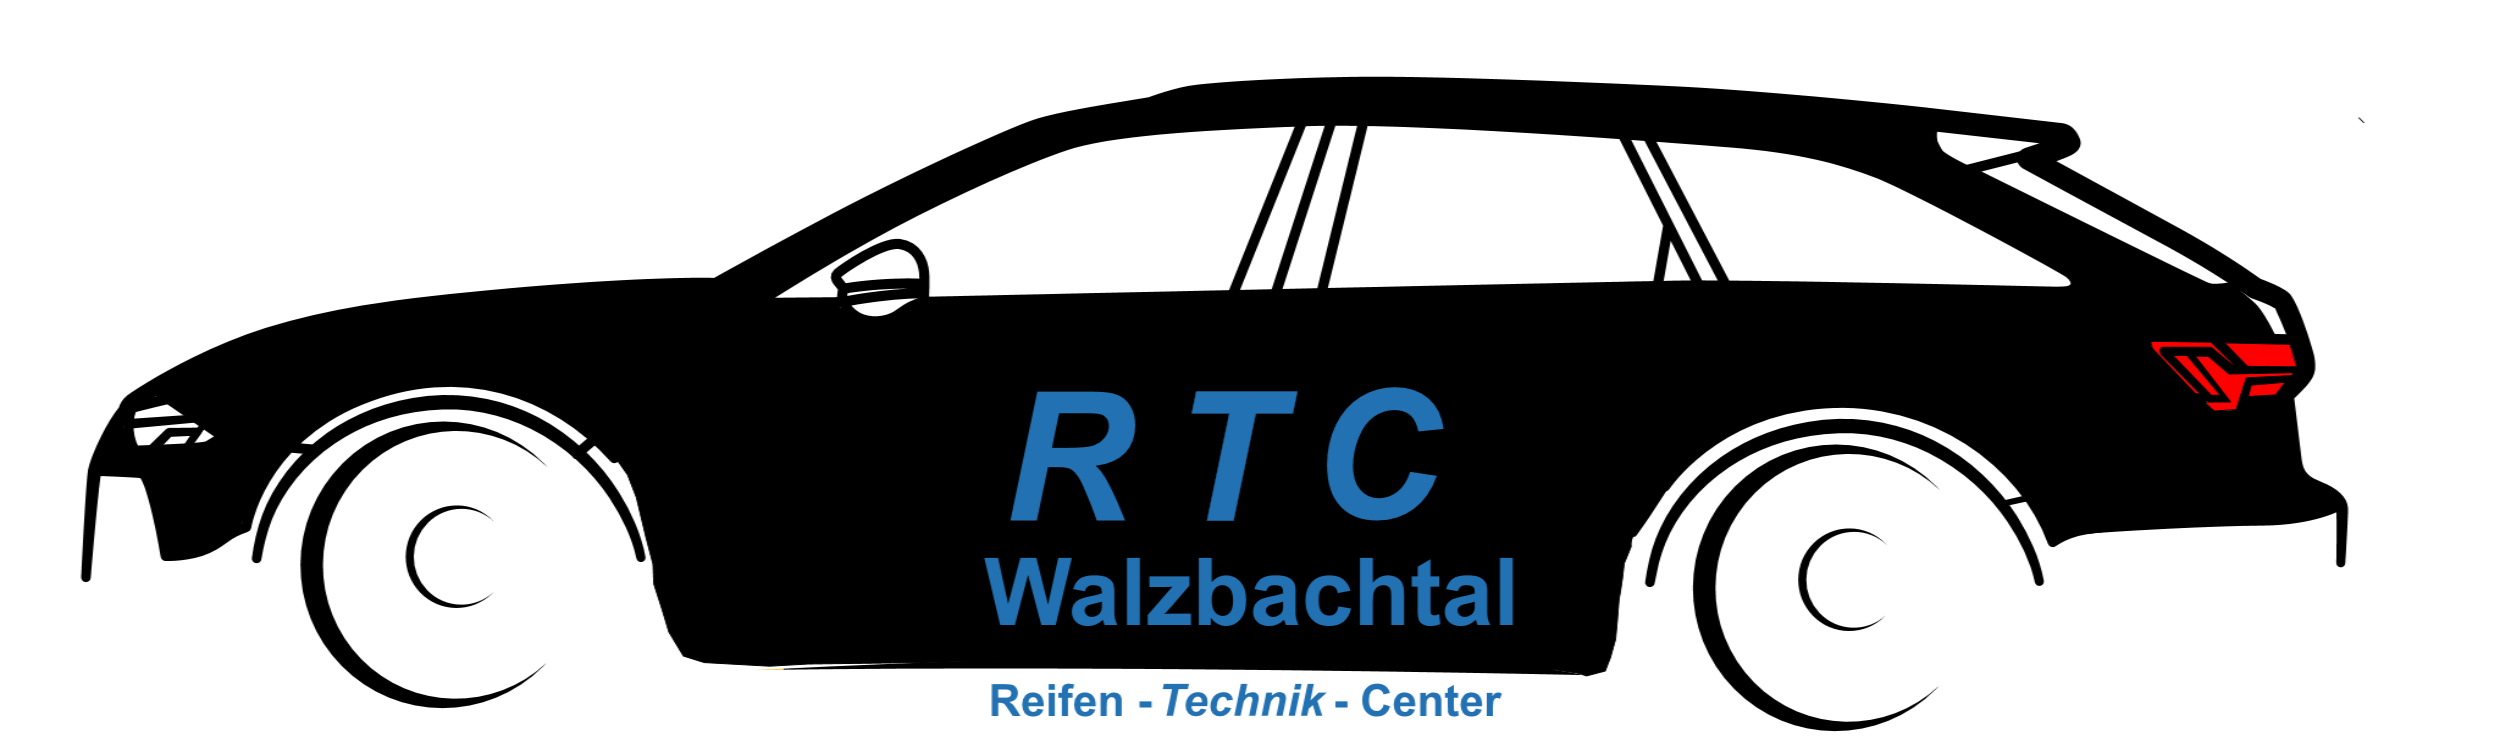 RTC-Walzbachtal